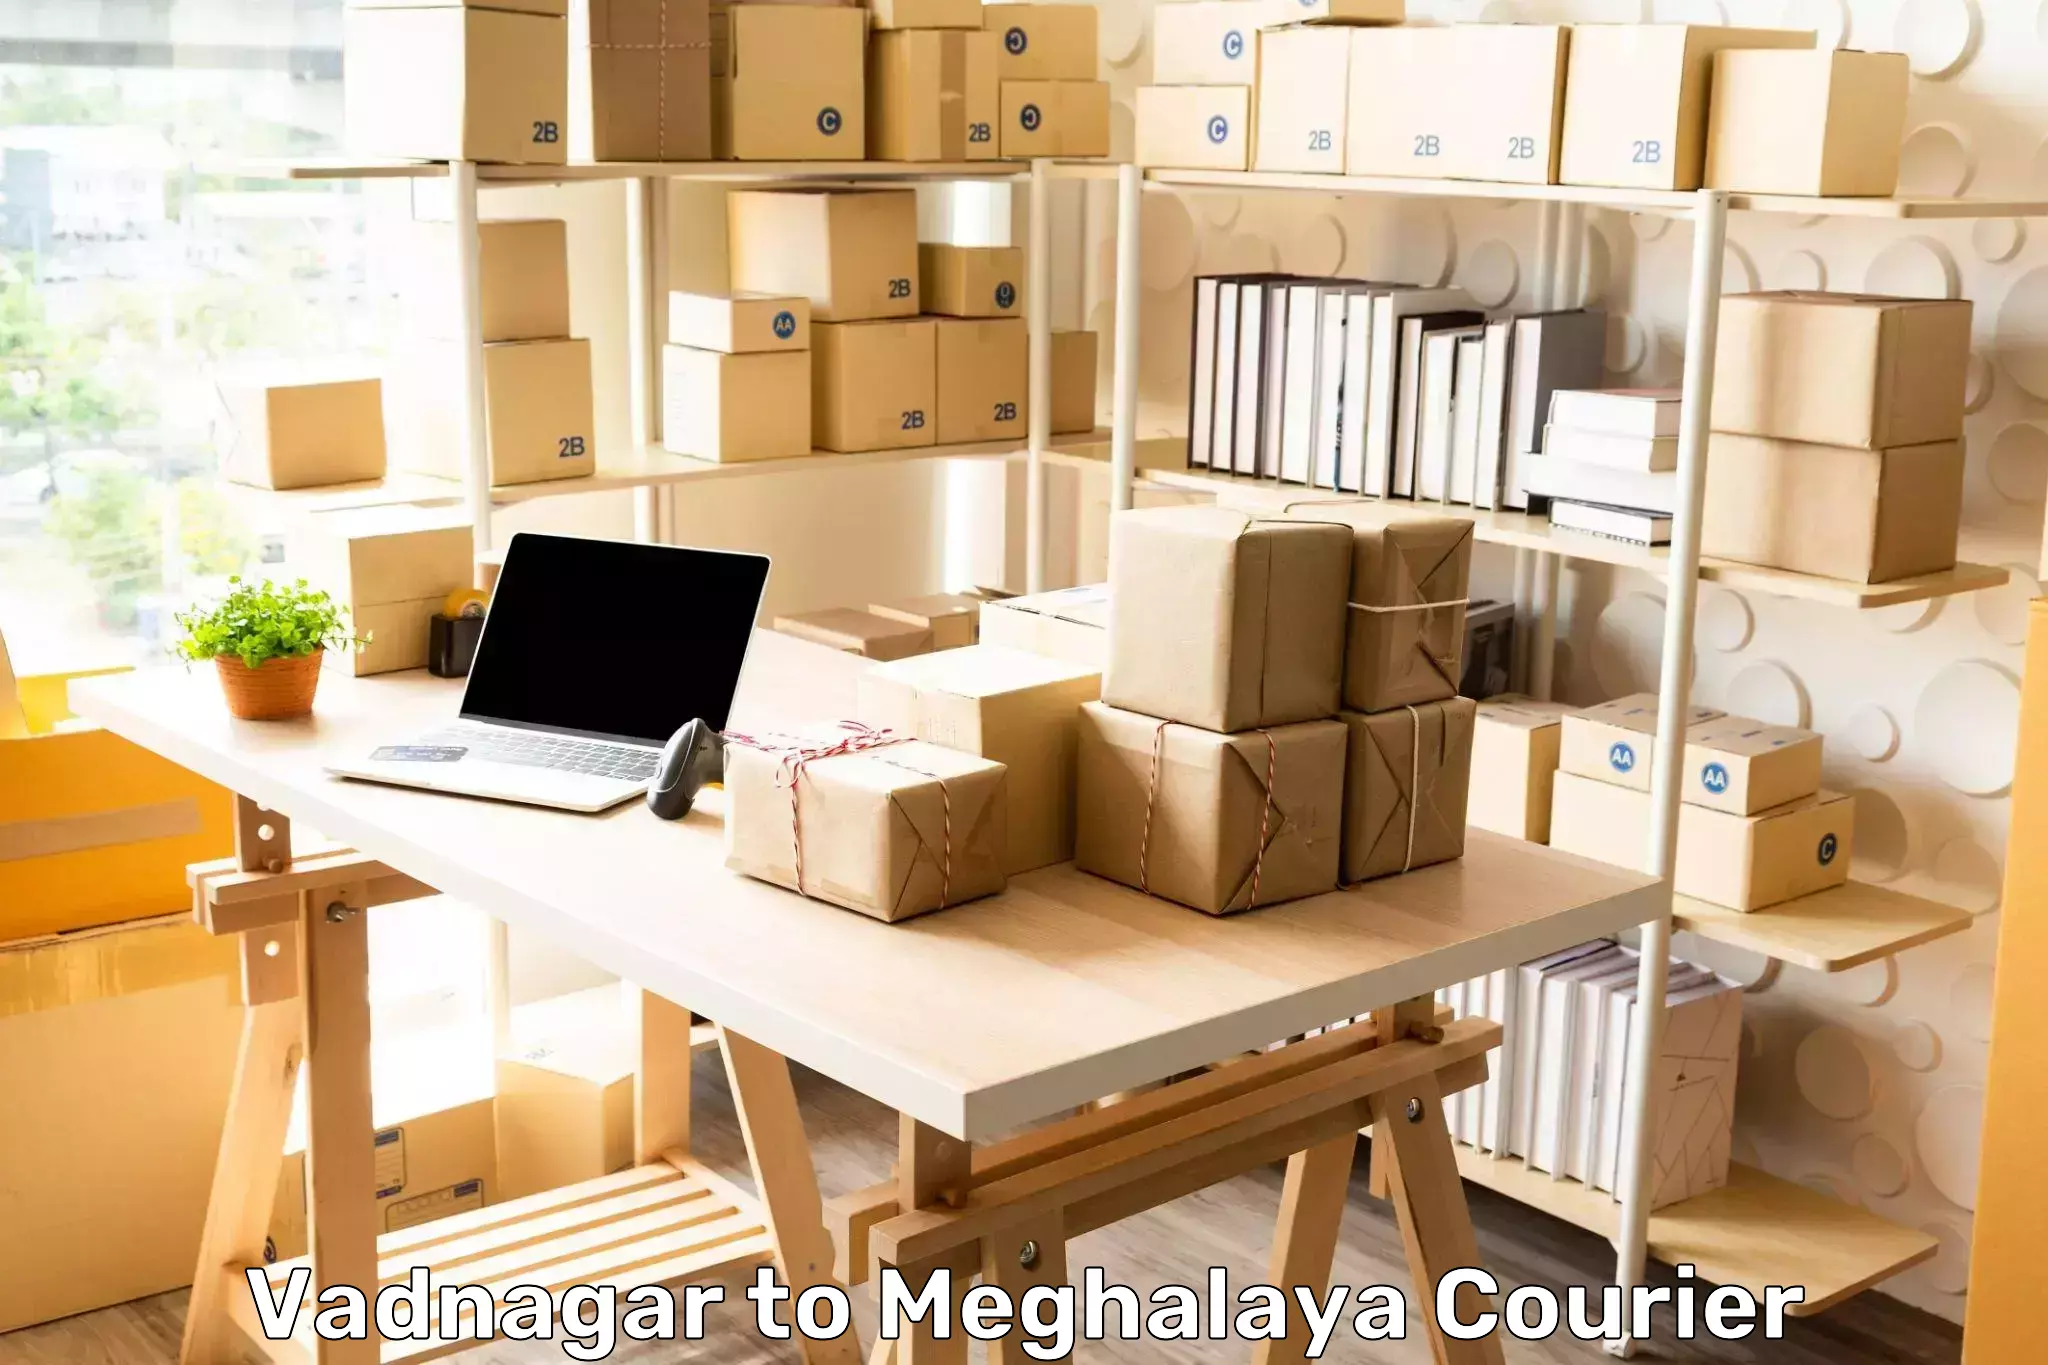 Innovative logistics solutions Vadnagar to Meghalaya